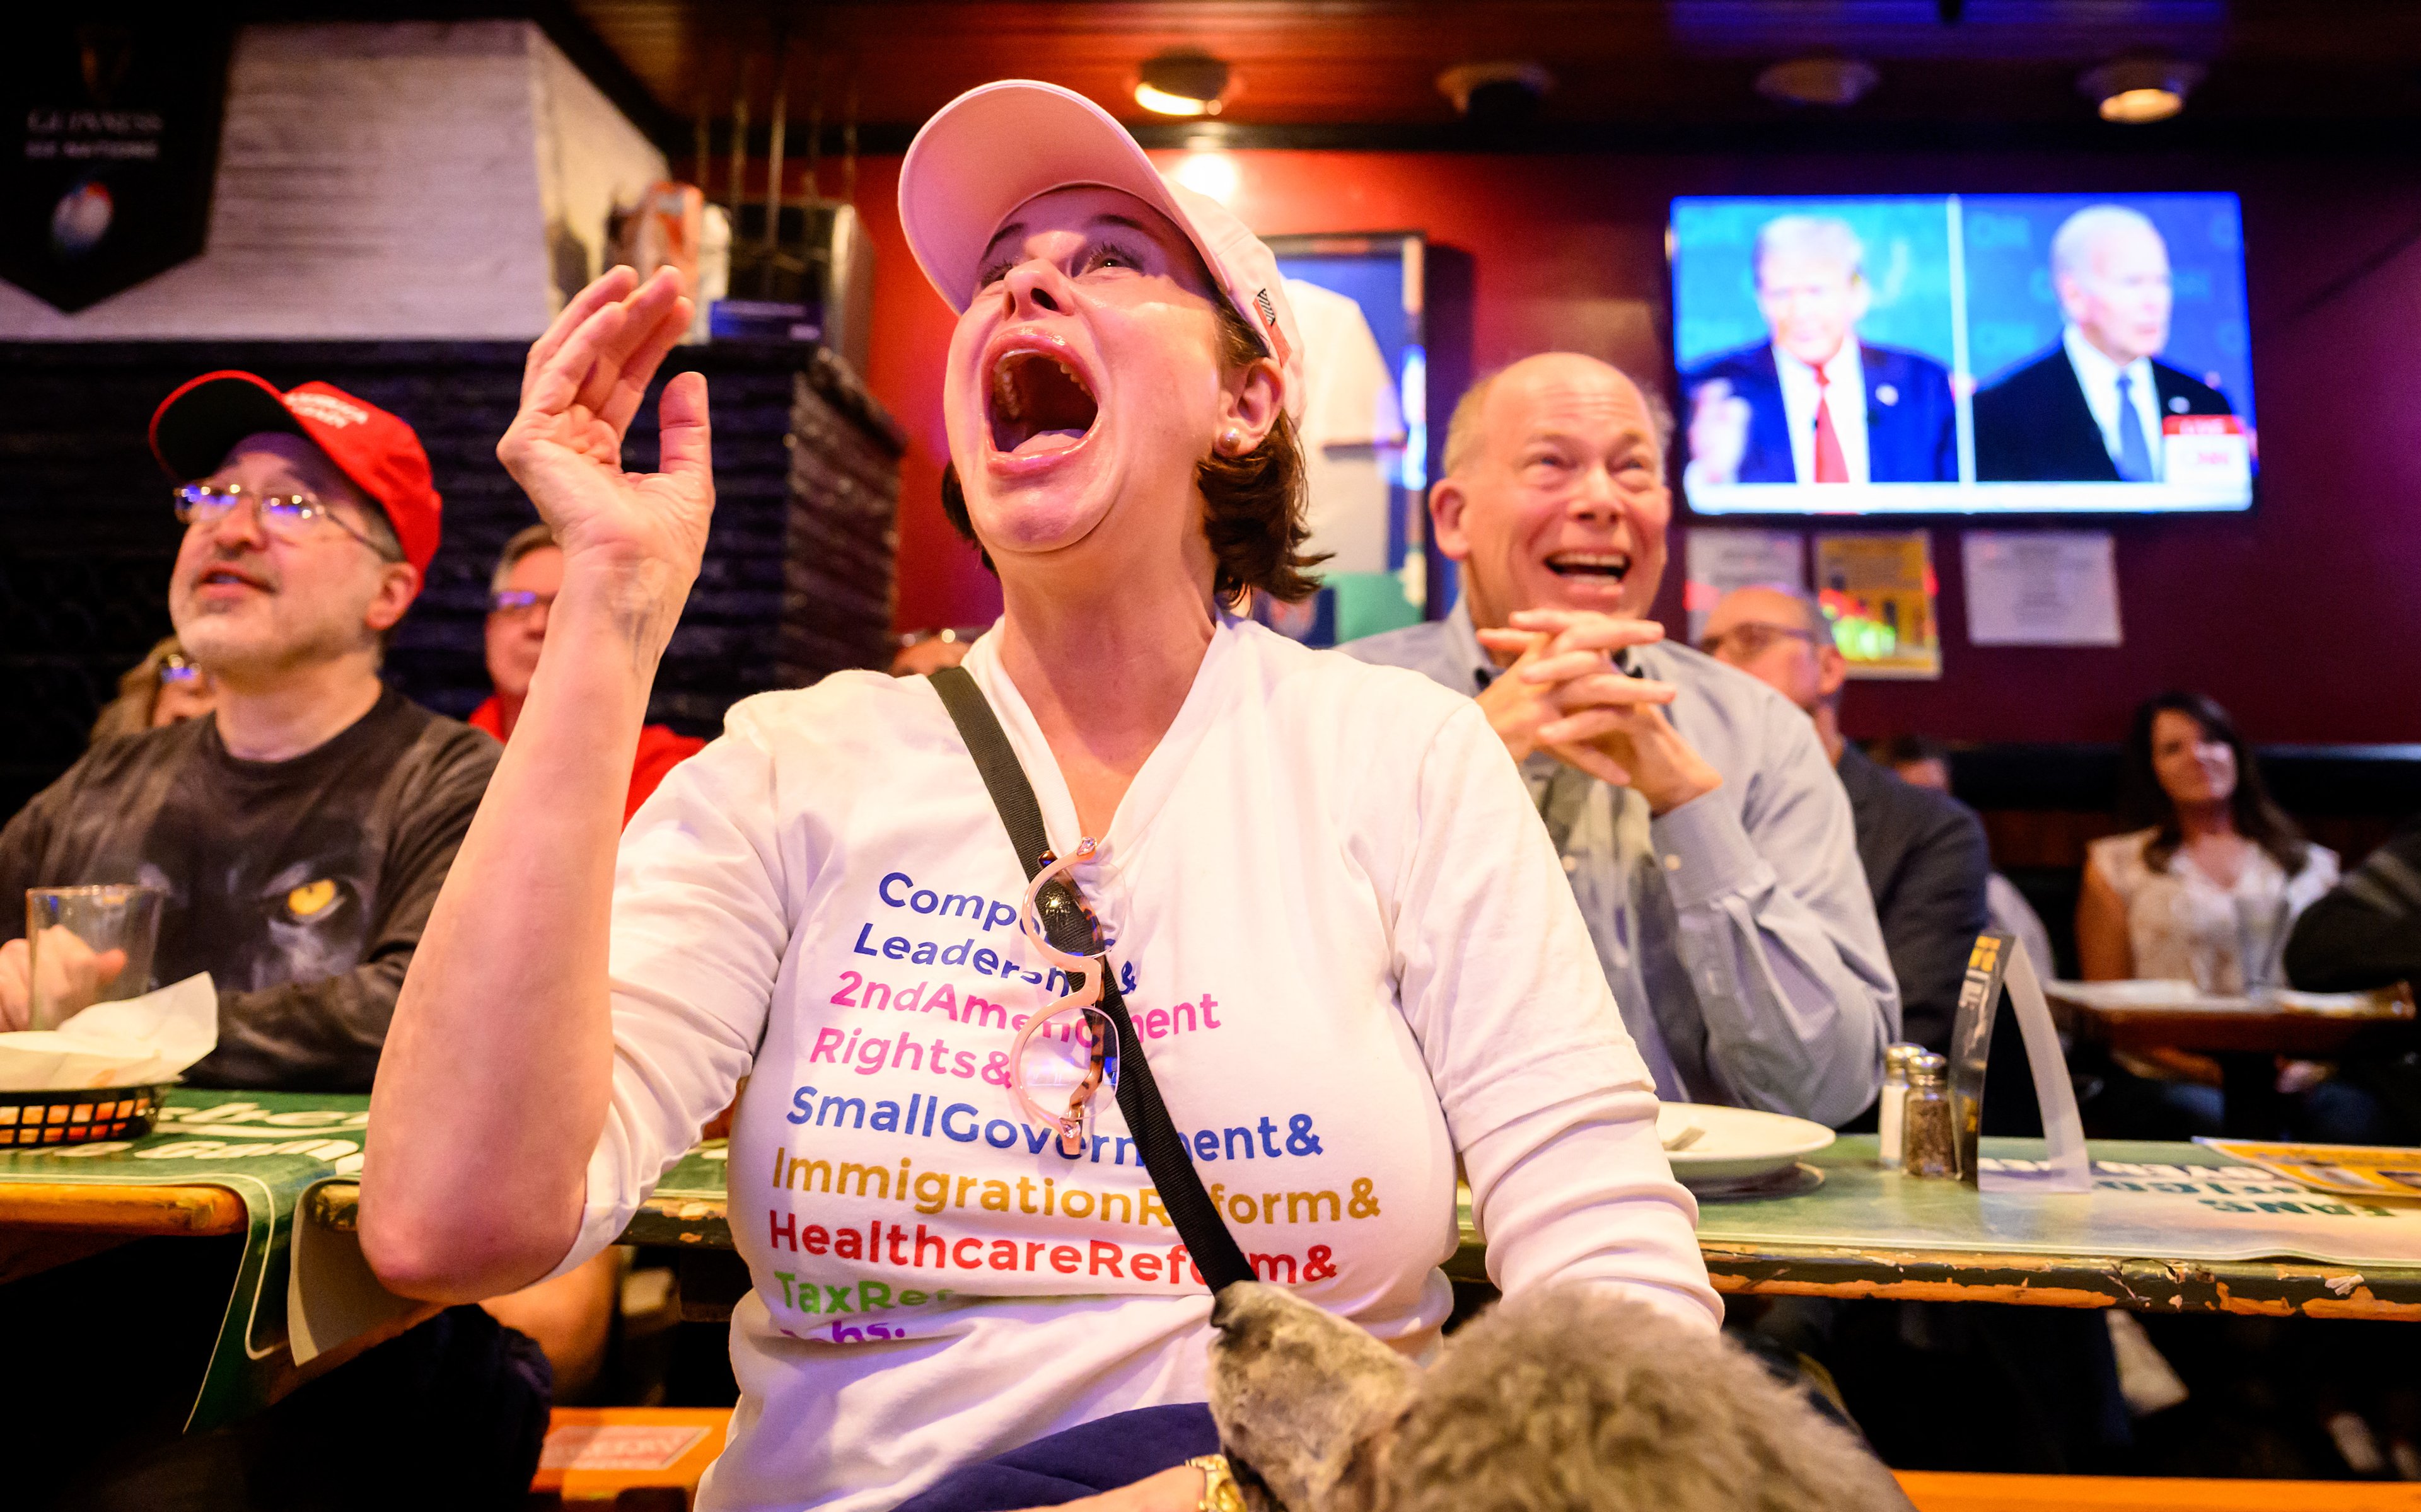 Pessoas reagindo ao debate em um pub em São Francisco, Califórnia